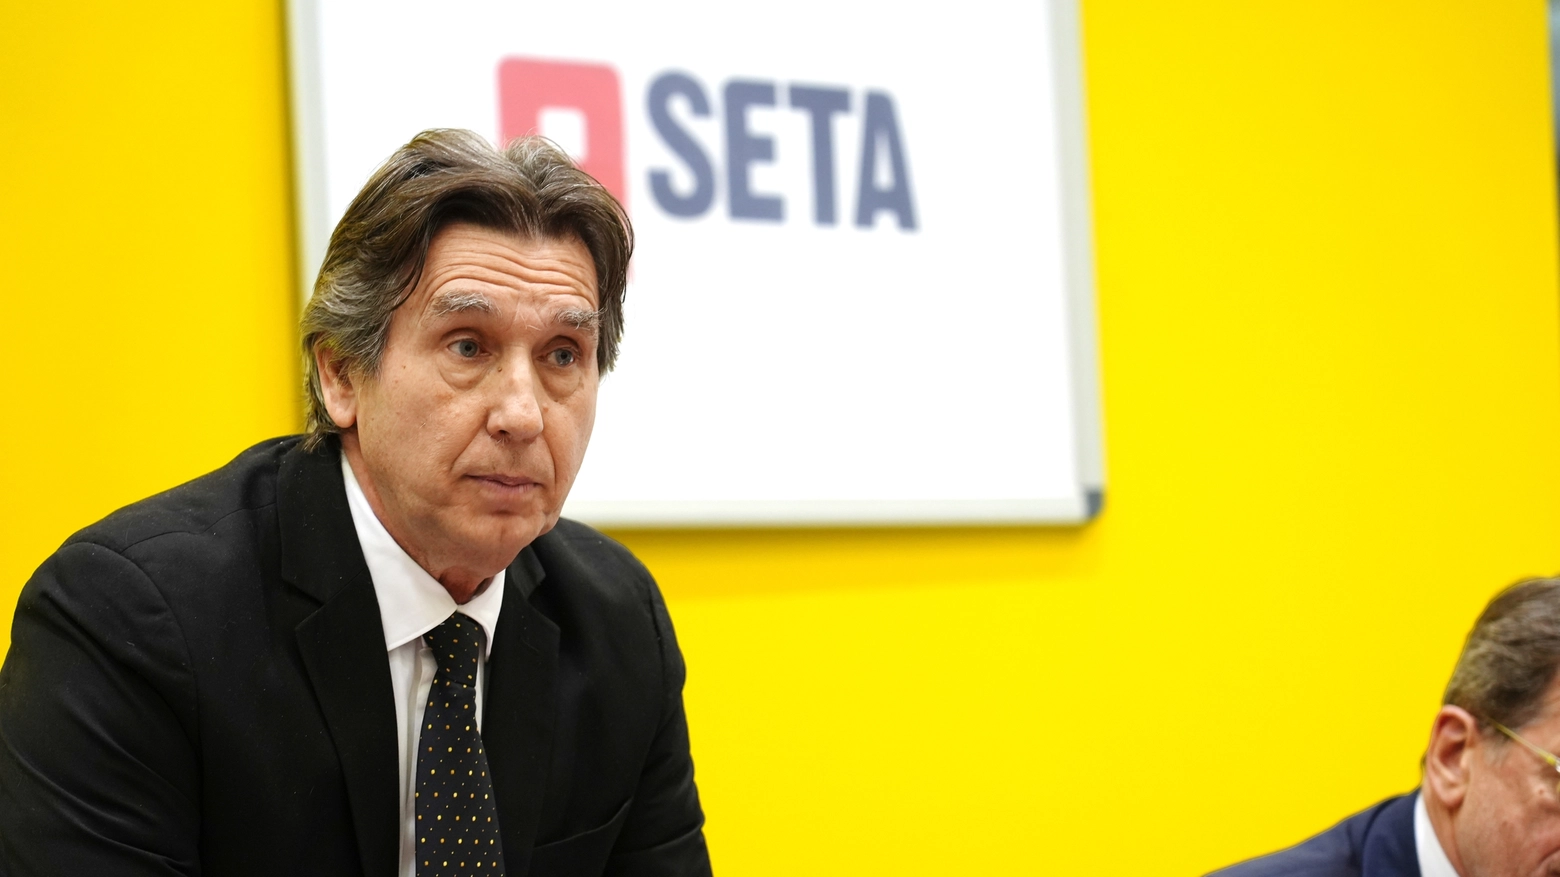 Antonio Nicolini lascia la presidenza di Seta (foto Fiocchi)